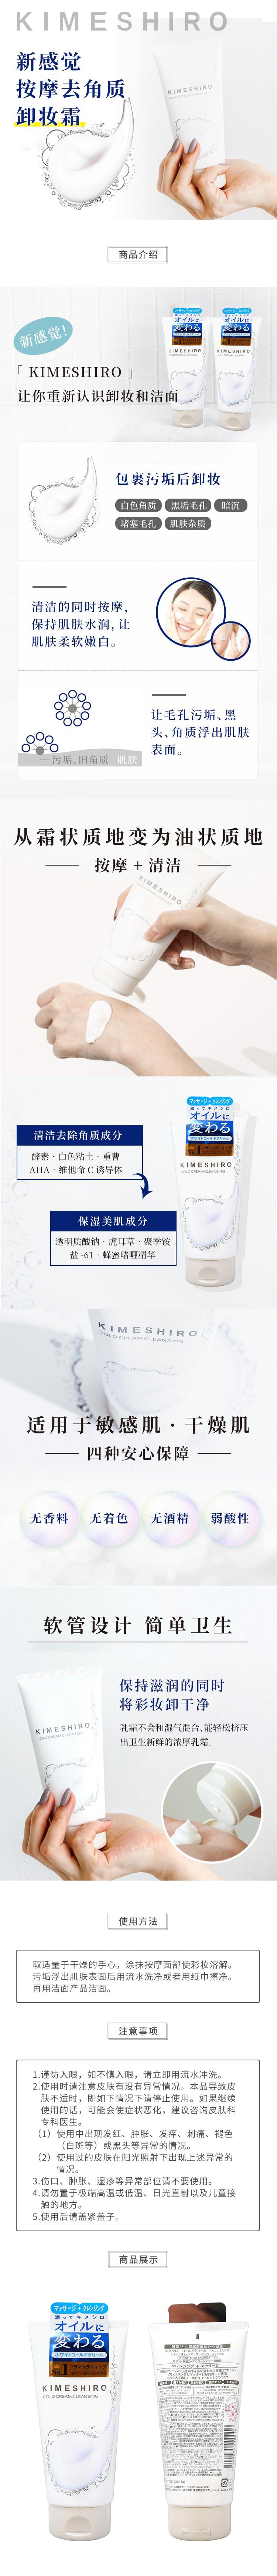 日本 KIMESHIRO 新感觉 冷冰肌按摩去角质 卸妆乳霜 150g